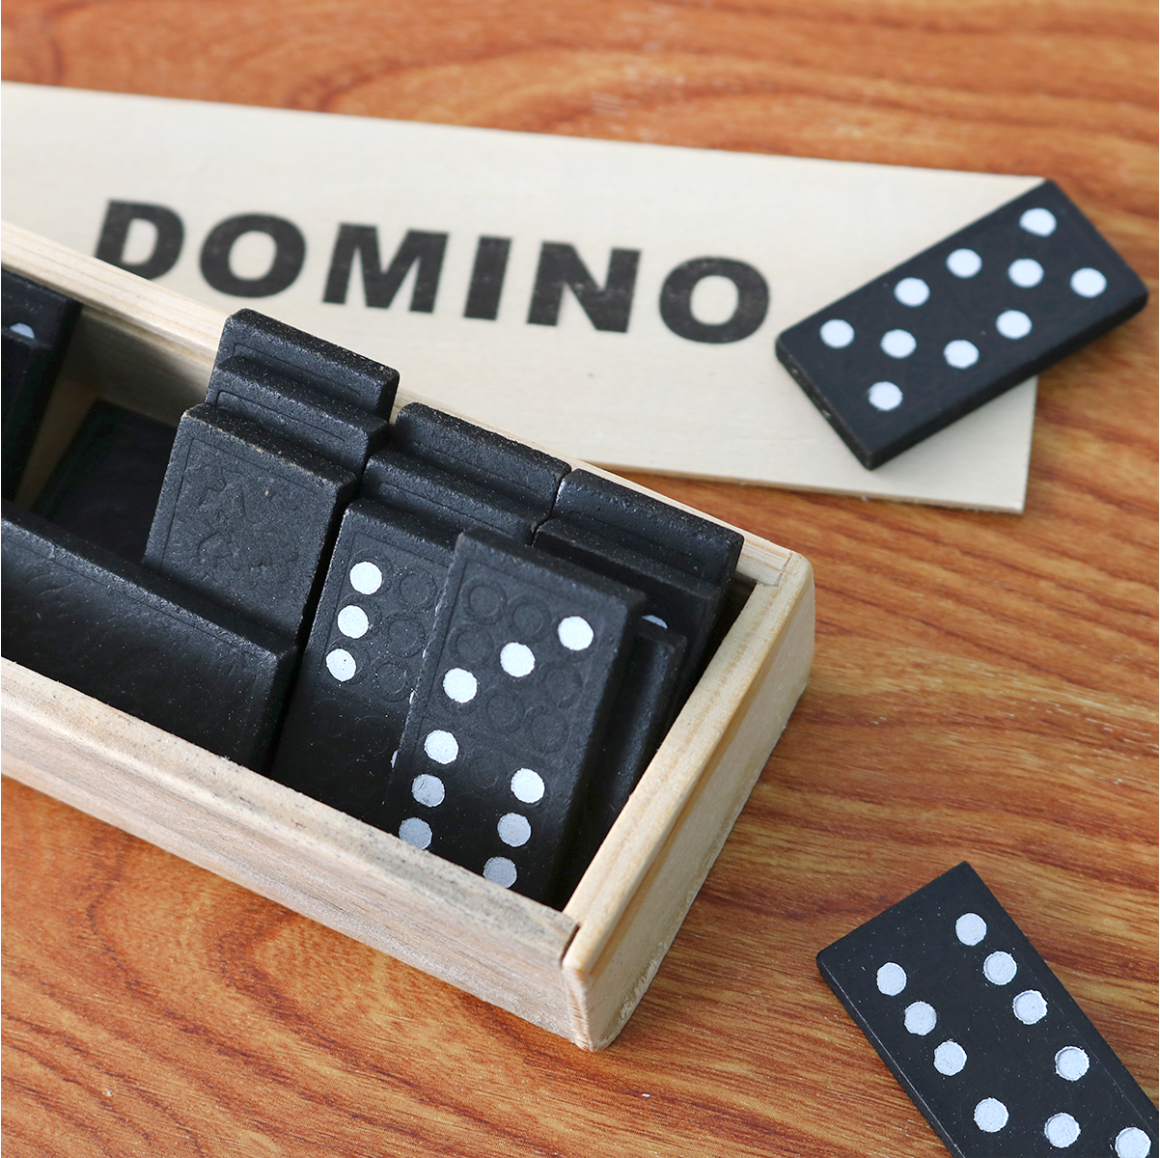 Jogo de Domino lata 28 pecas 2 a 4 jogadores